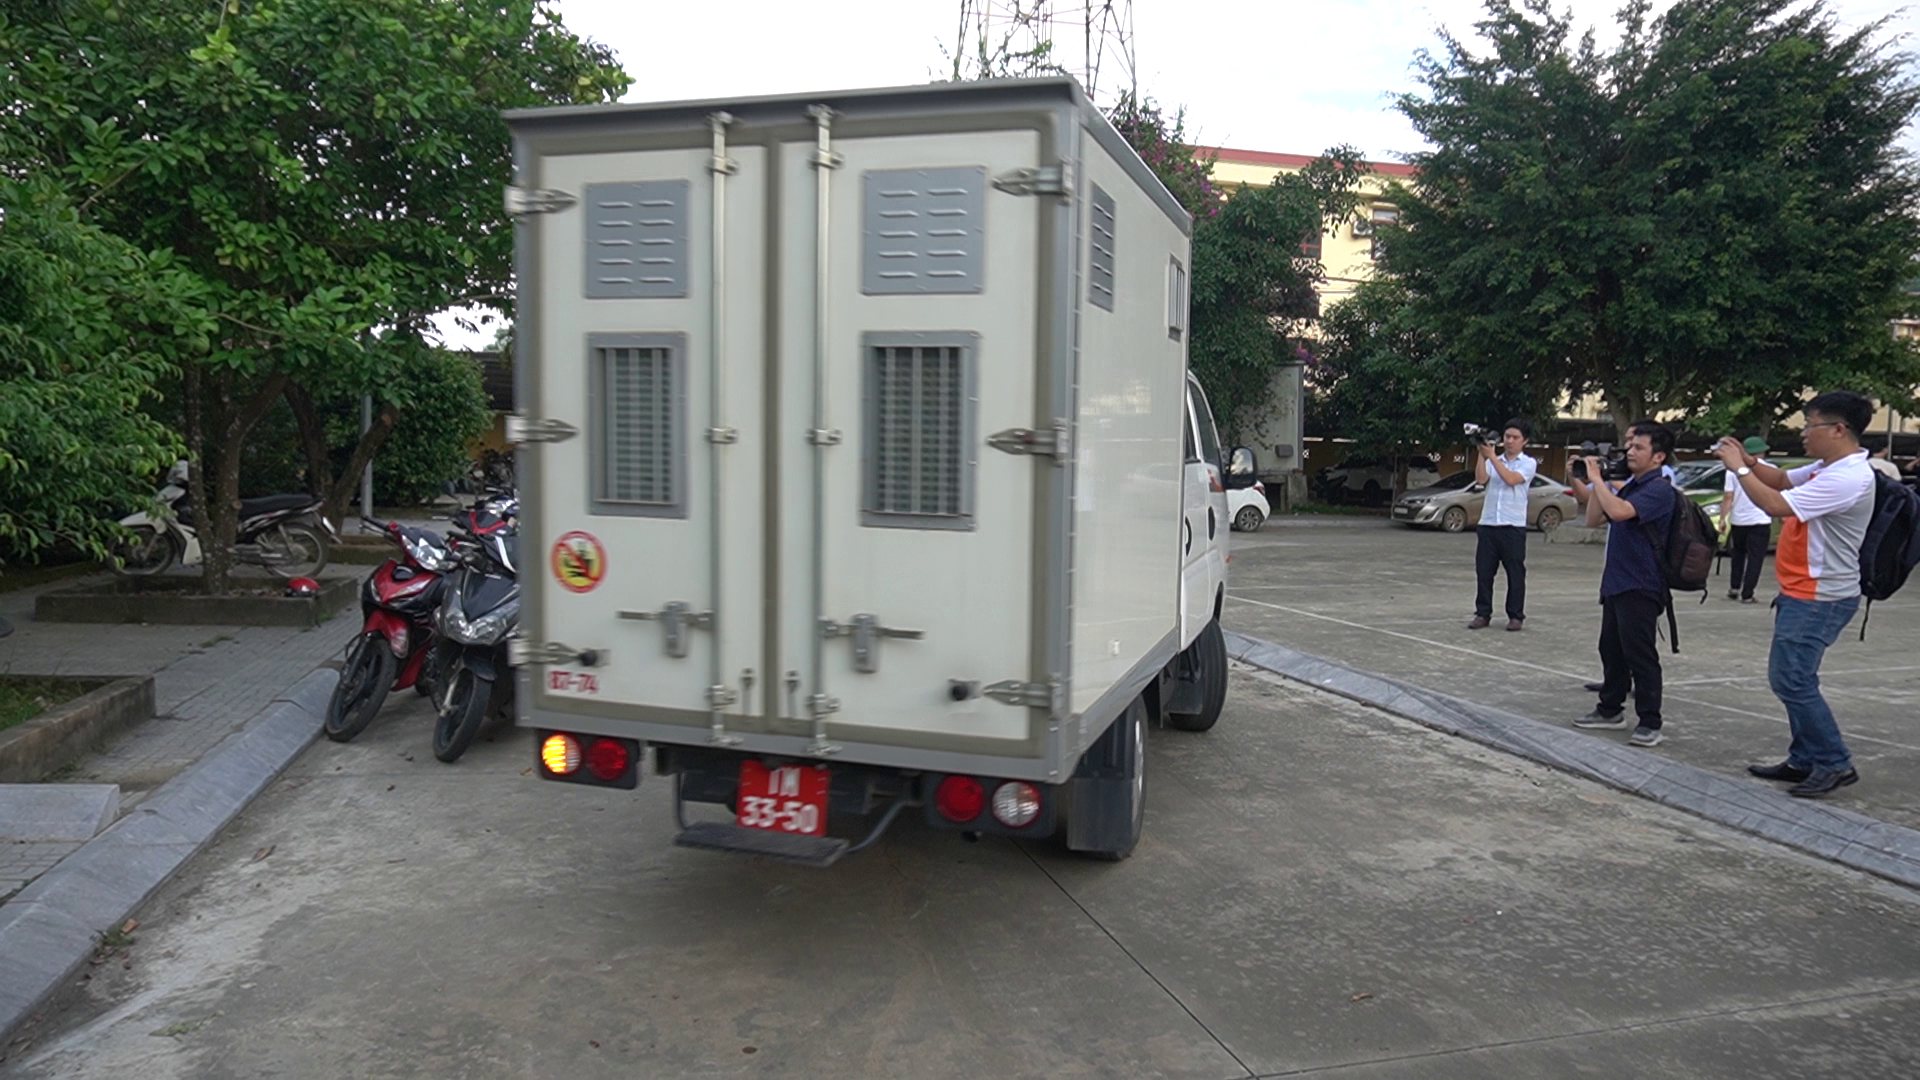 Chiếc xe thùng chở phạm nhân trở lại trại giam - Bộ Quốc Phòng (ở xã Thành Long, huyện Thạch Thành, tỉnh Thanh Hóa), nơi phạm nhân đã bỏ trốn vào chiều tối hôm qua (31.5). Ảnh: Q.D